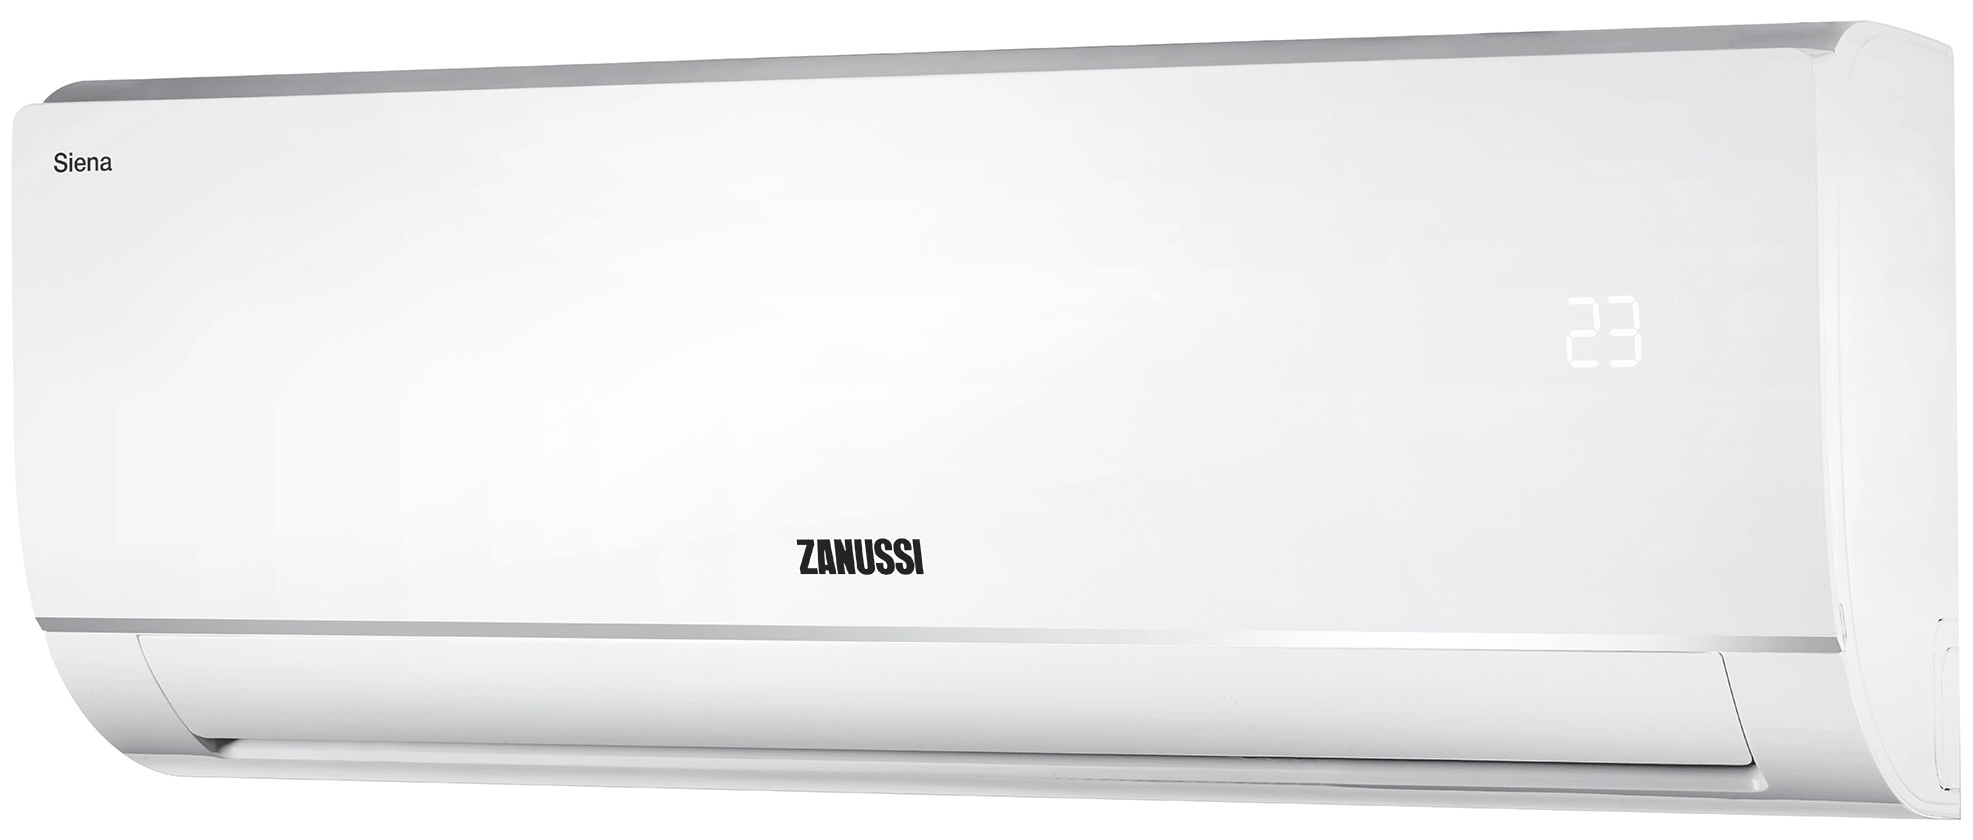 Кондиционер сплит-система Zanussi Siena ZACS-12 HS/A21/N1 отзывы - изображения 5